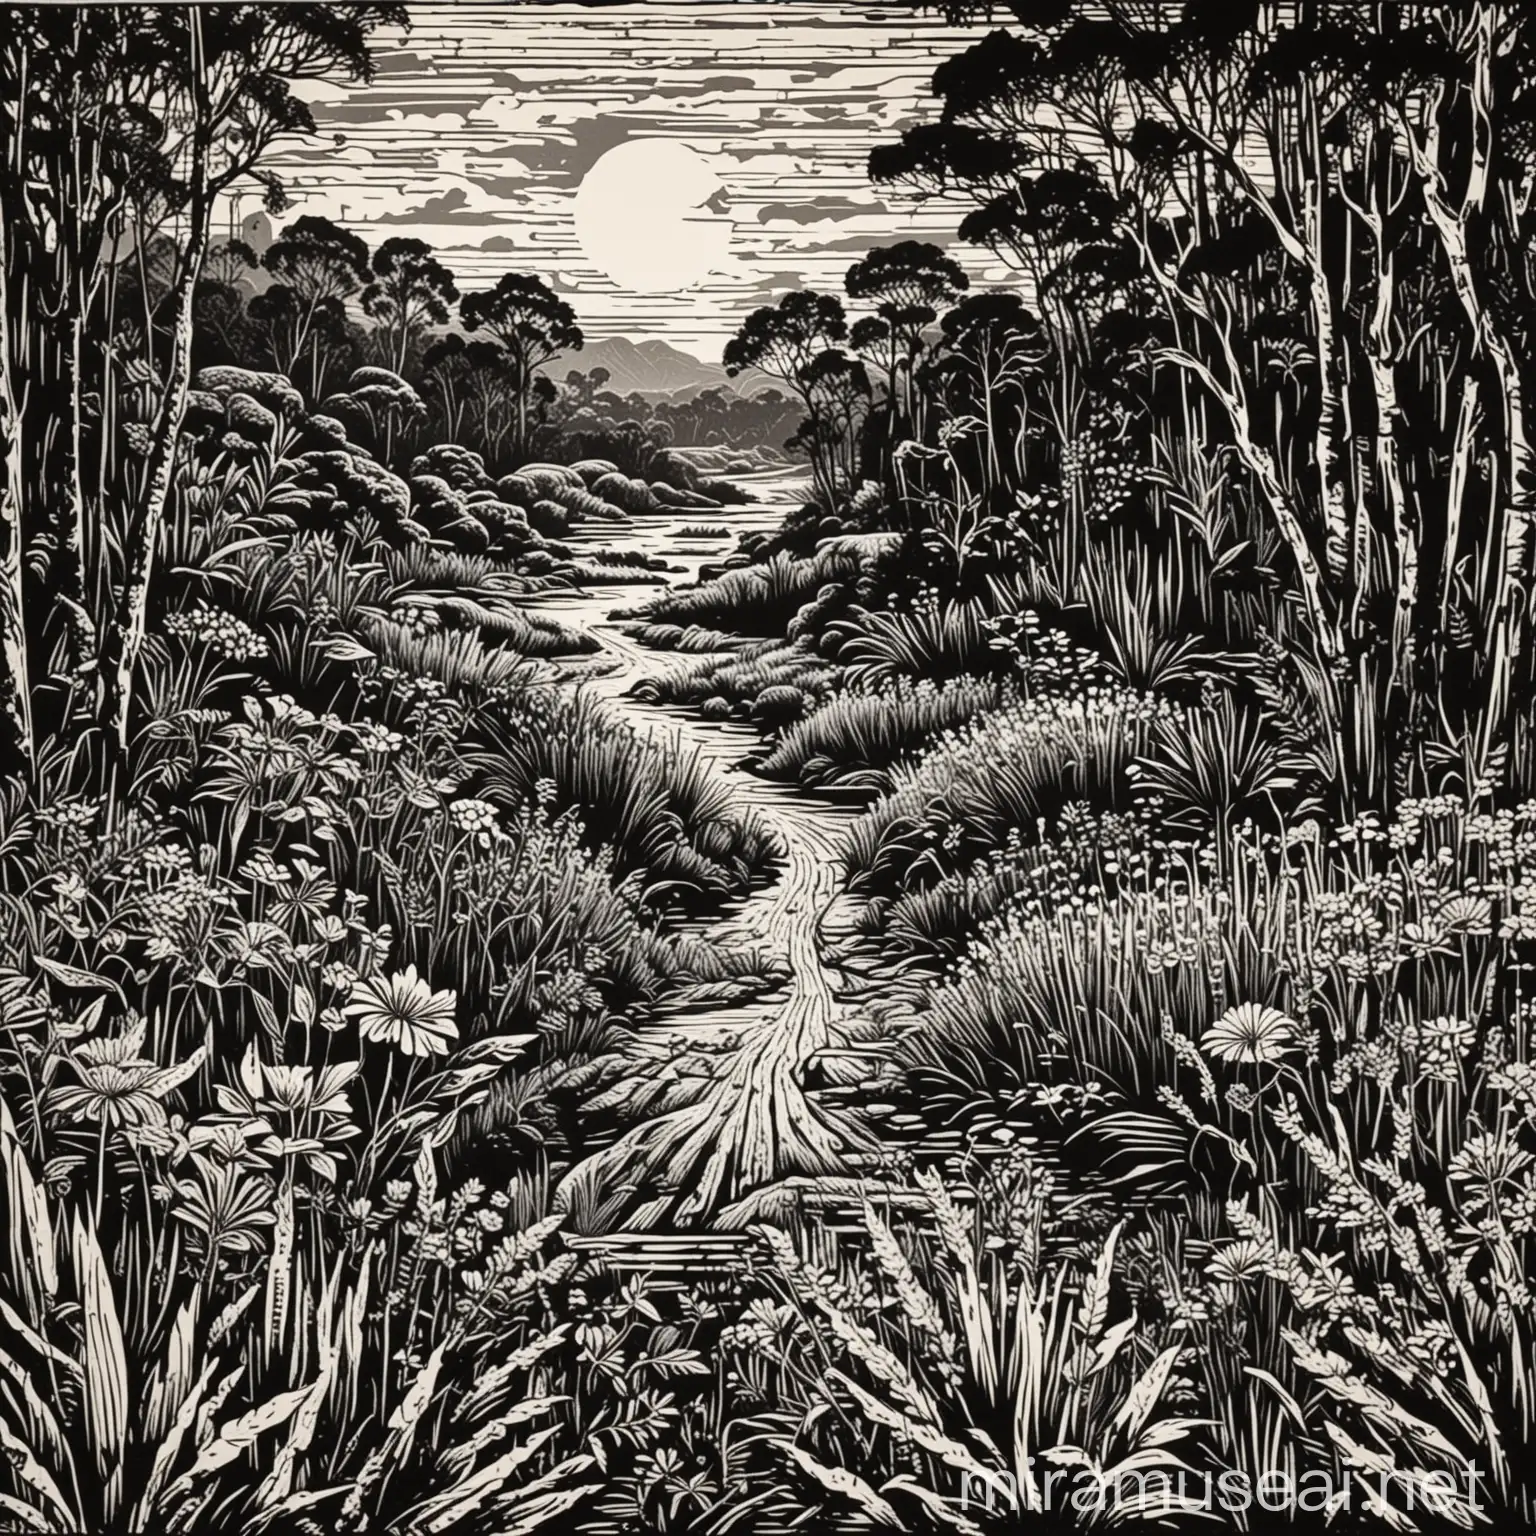 Australian Landscape Linocut Print with Hidden ManMade Features